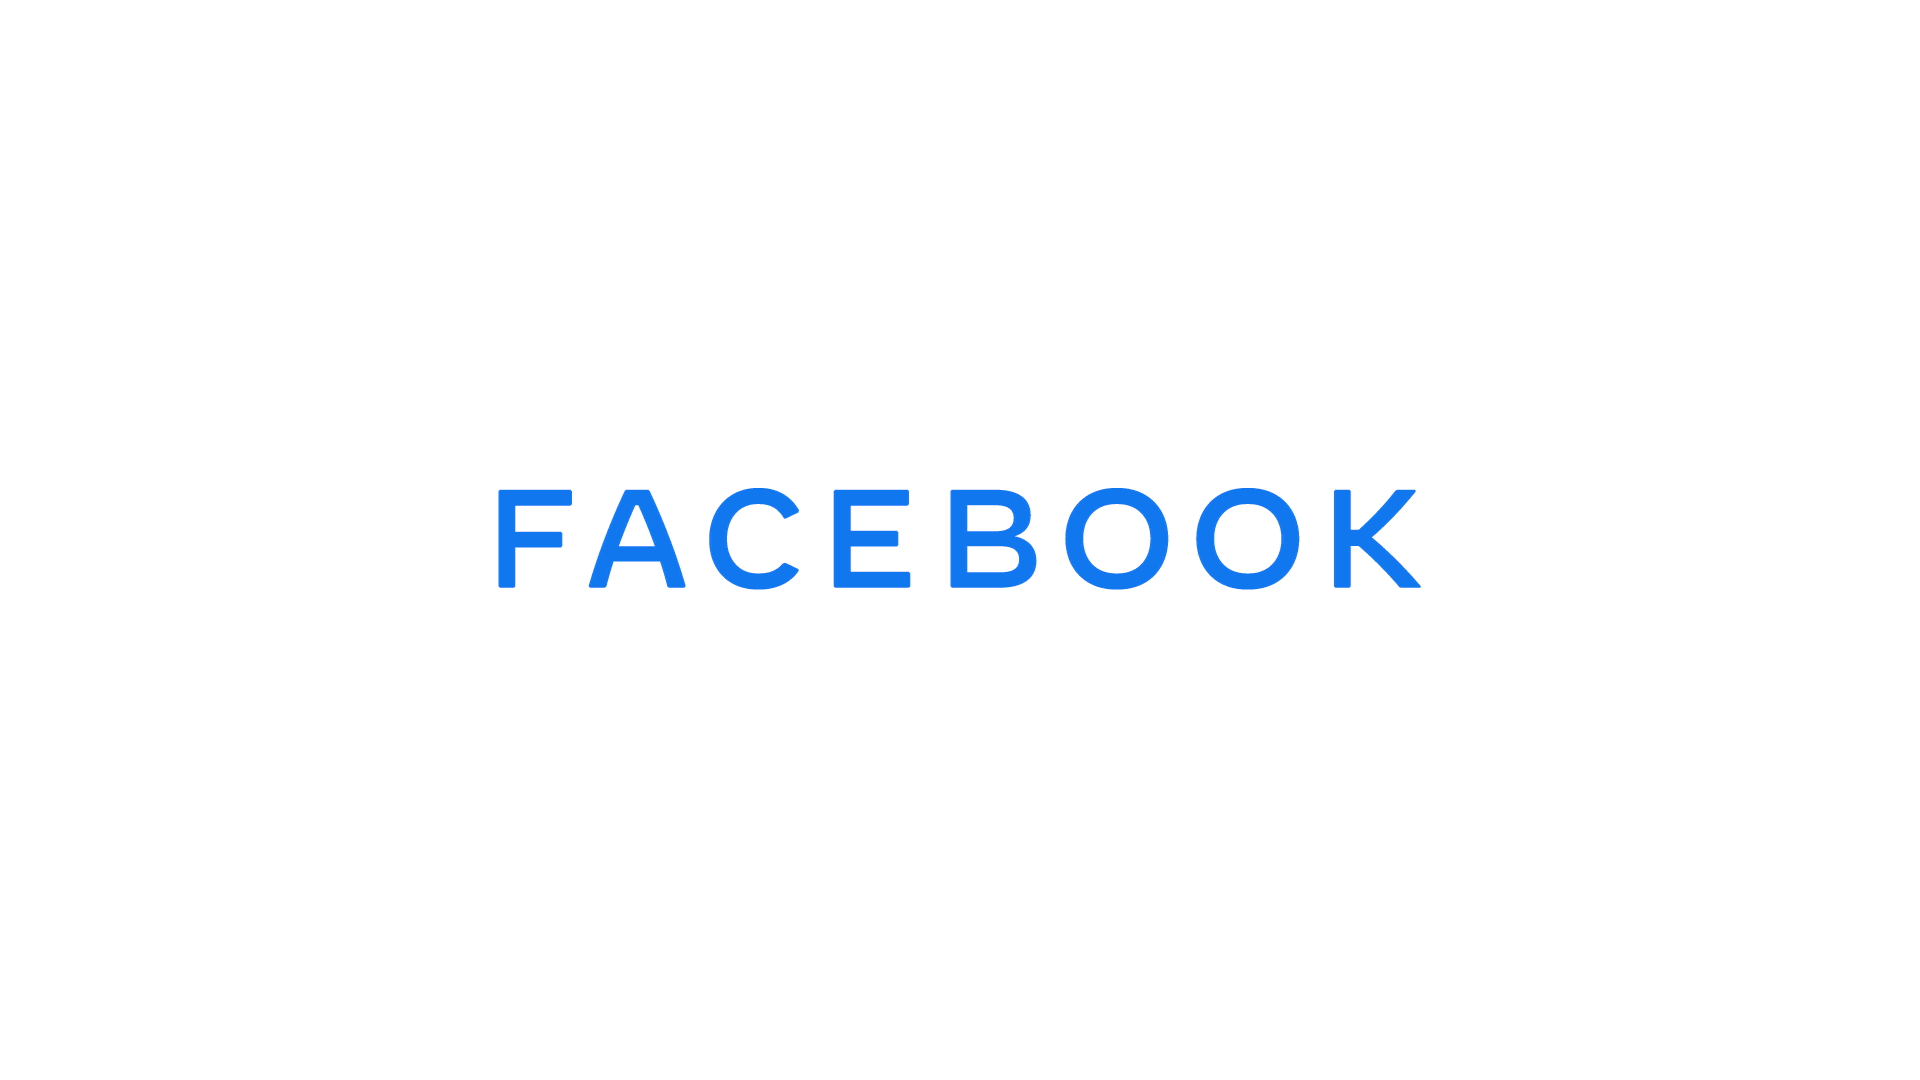 Brandaktuell: Facebook erscheint mit neuem LOGO 2